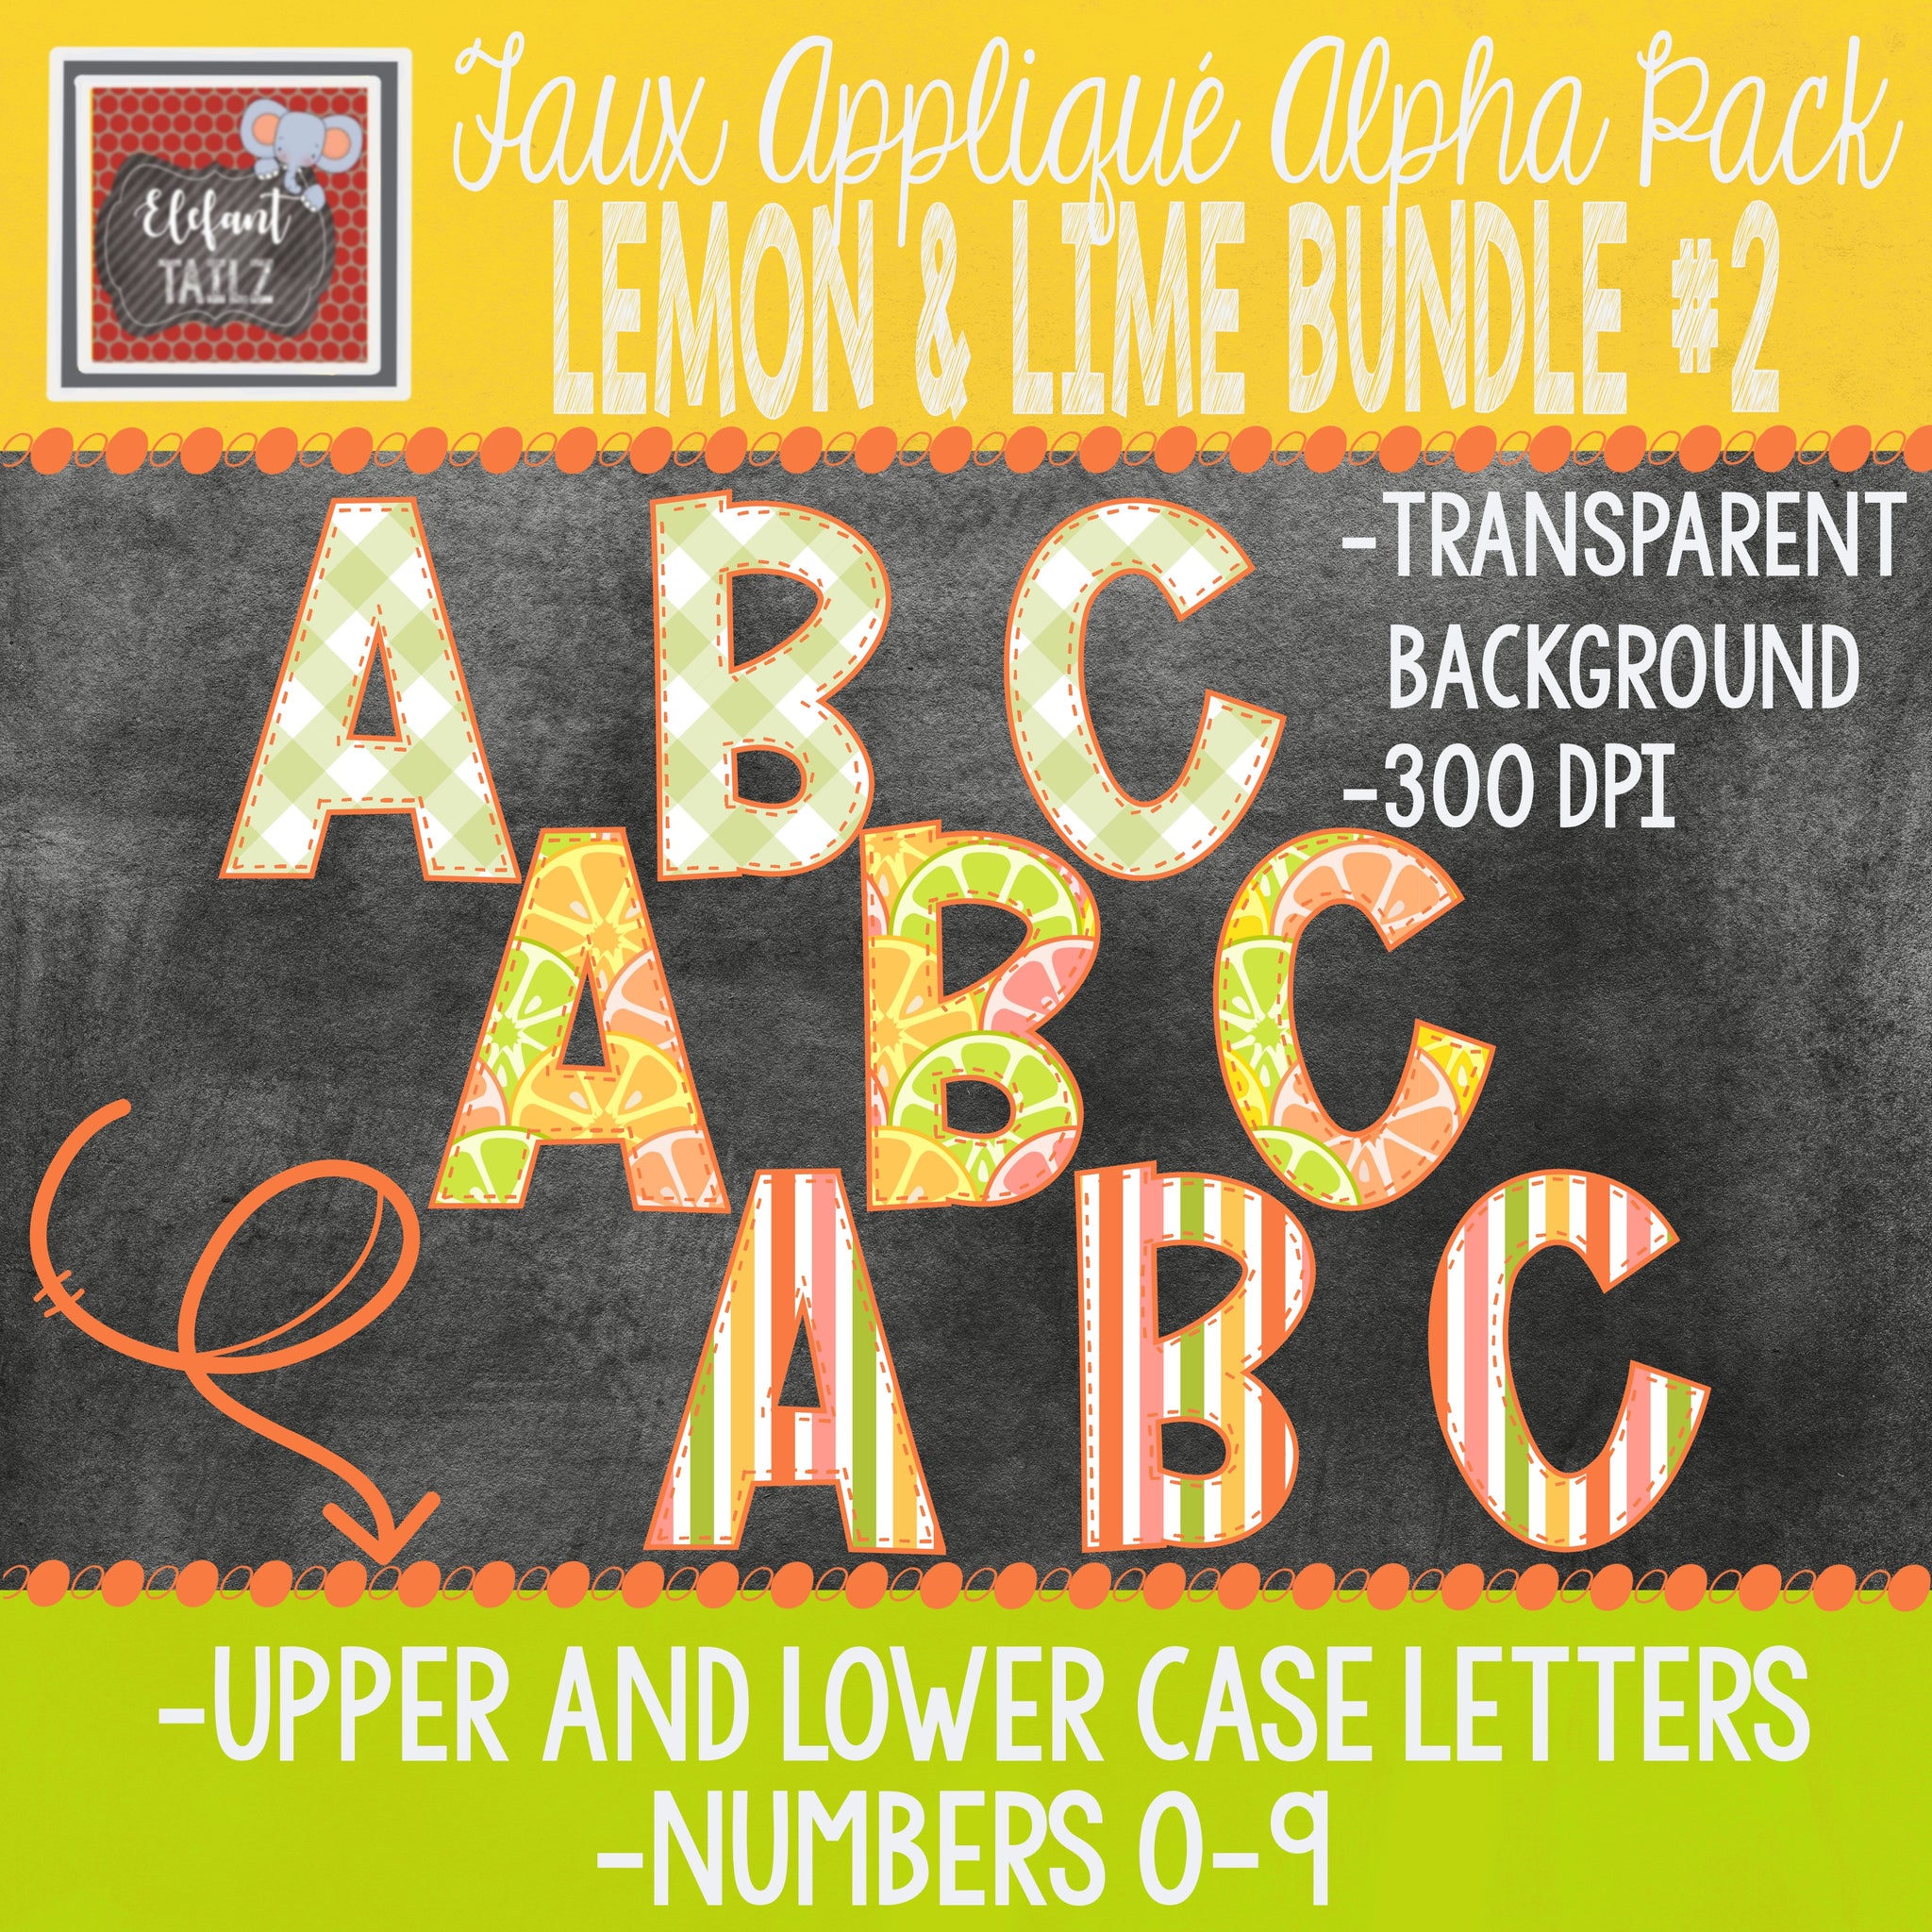 Alpha & Number Pack - Lemon & Lime BUNDLE #2